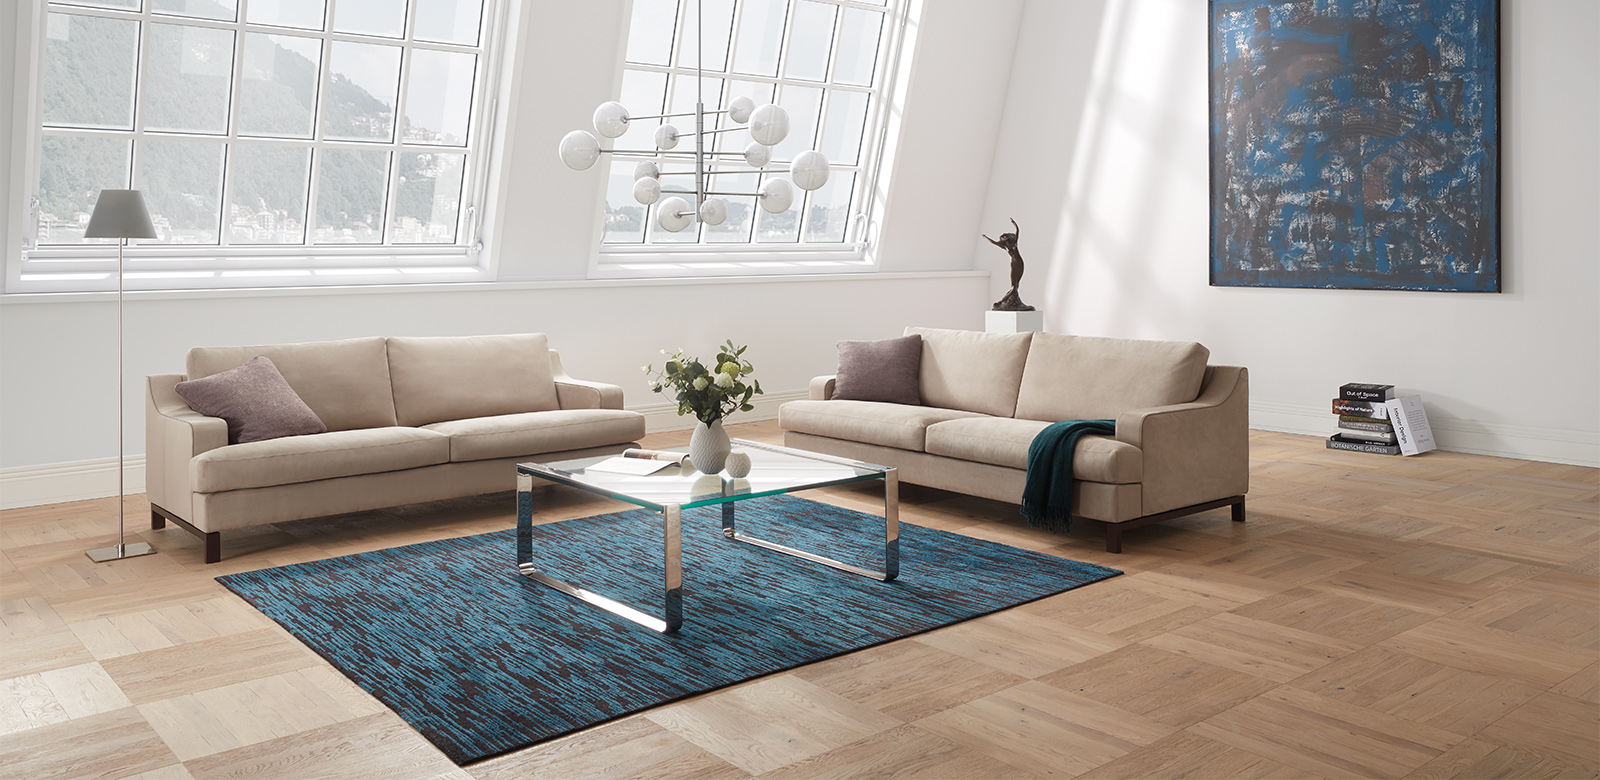 CL770 Sofas aus beigem Leder mit Glastisch auf blauem Teppich in weitläufigem Wohnzimmers eines Industrie-Lofts